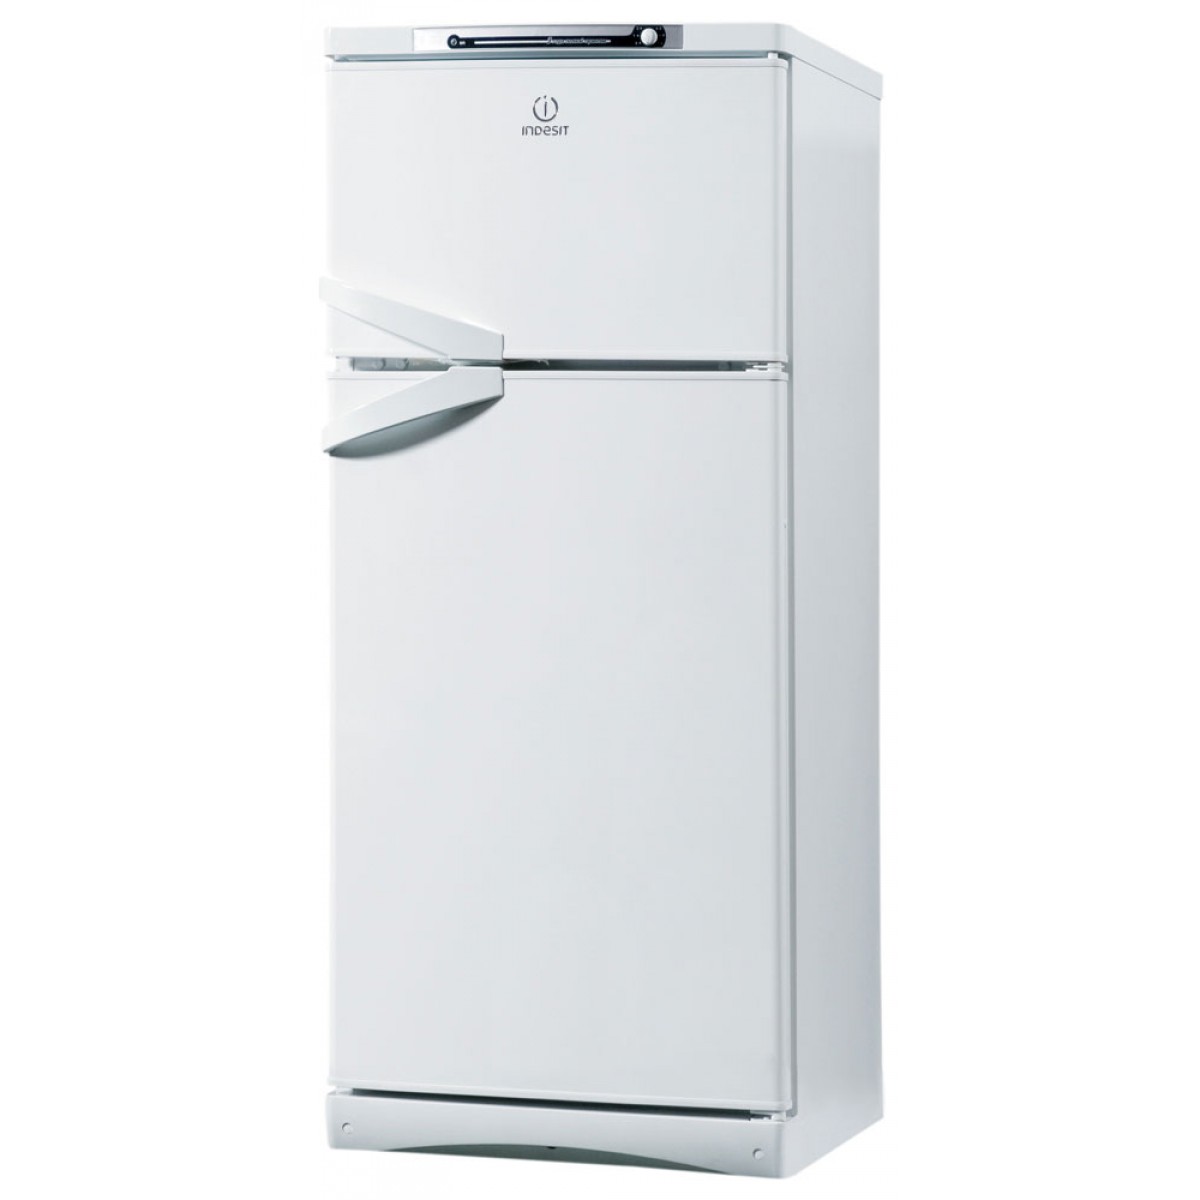 Холодильник купить цена индезит. Холодильник Индезит двухкамерный St 14510.